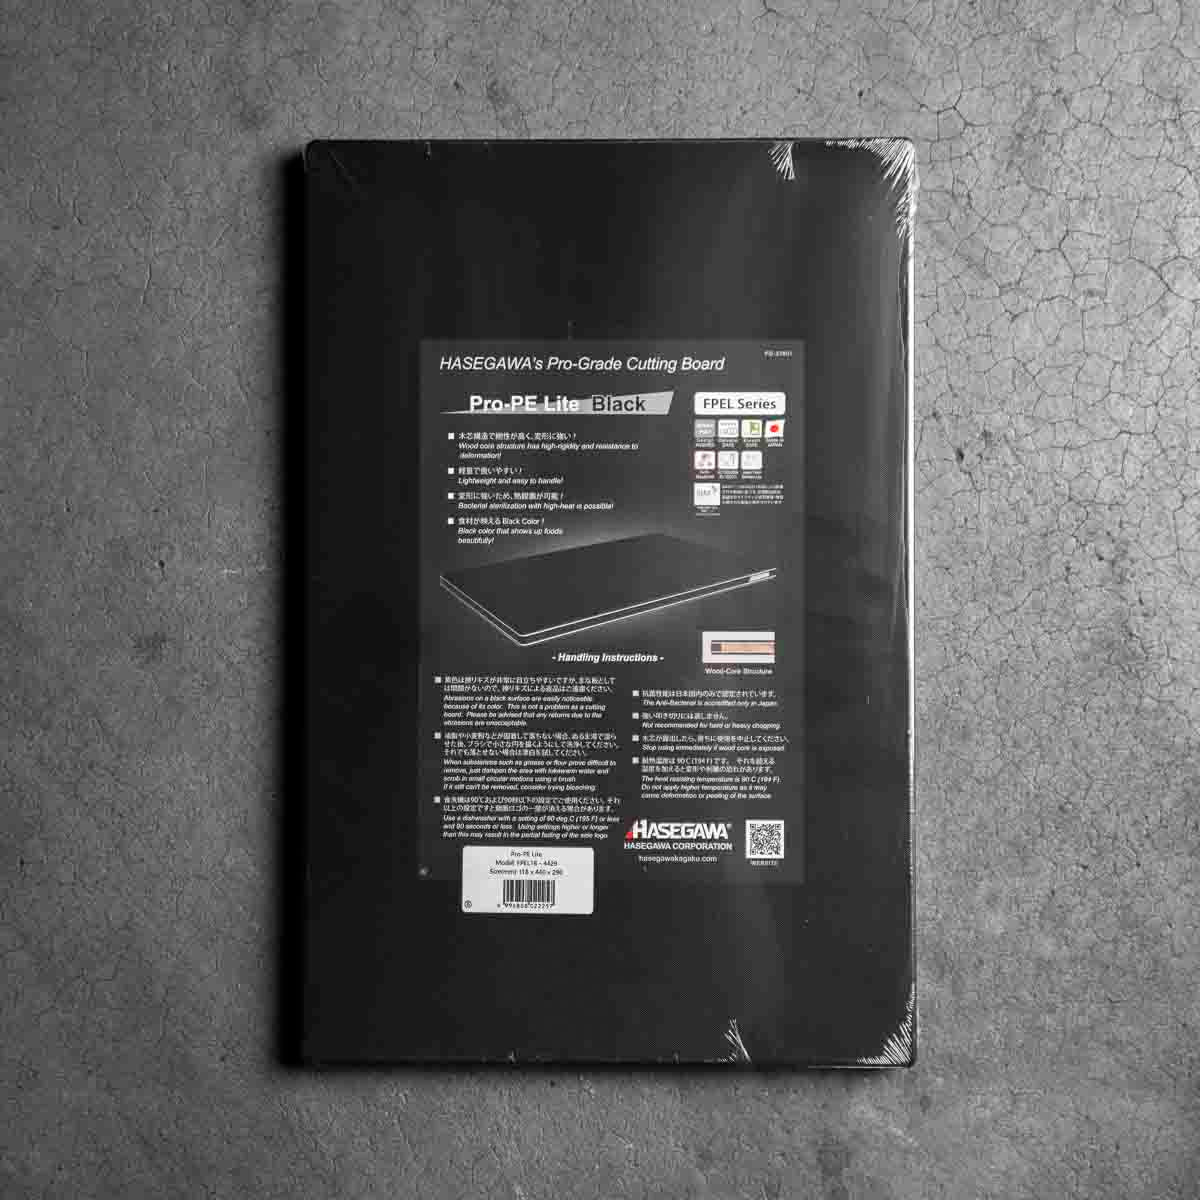 Hasegawa Wood-Core Pro-PE Lite Black Cutting Board - 440x290x18